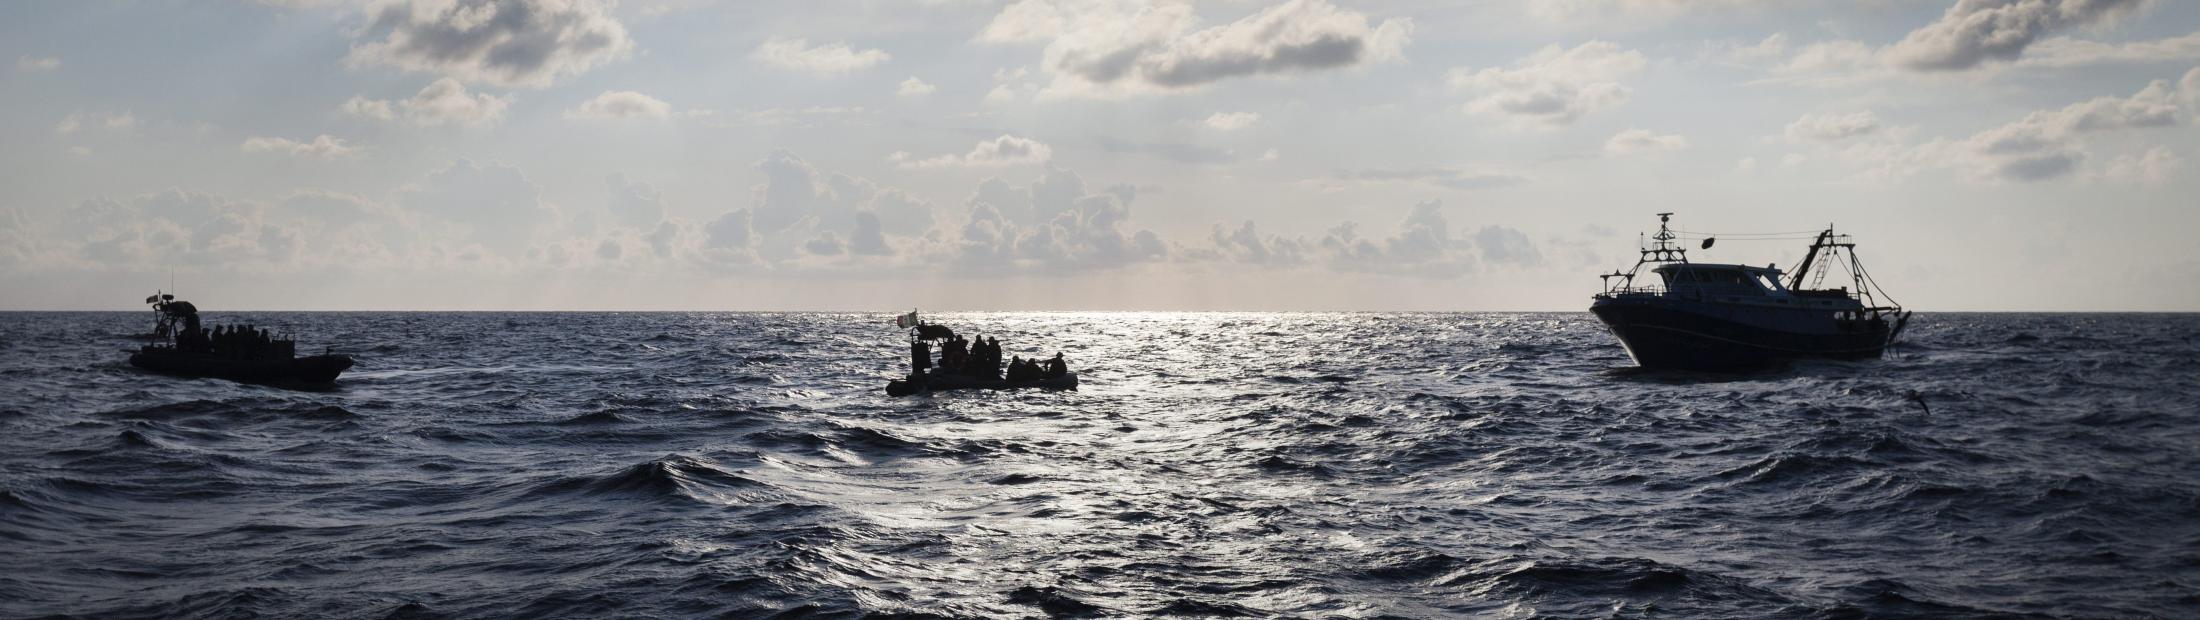 6 muertes al día: ACNUR informa sobre las Travesías desesperadas por el Mediterráneo